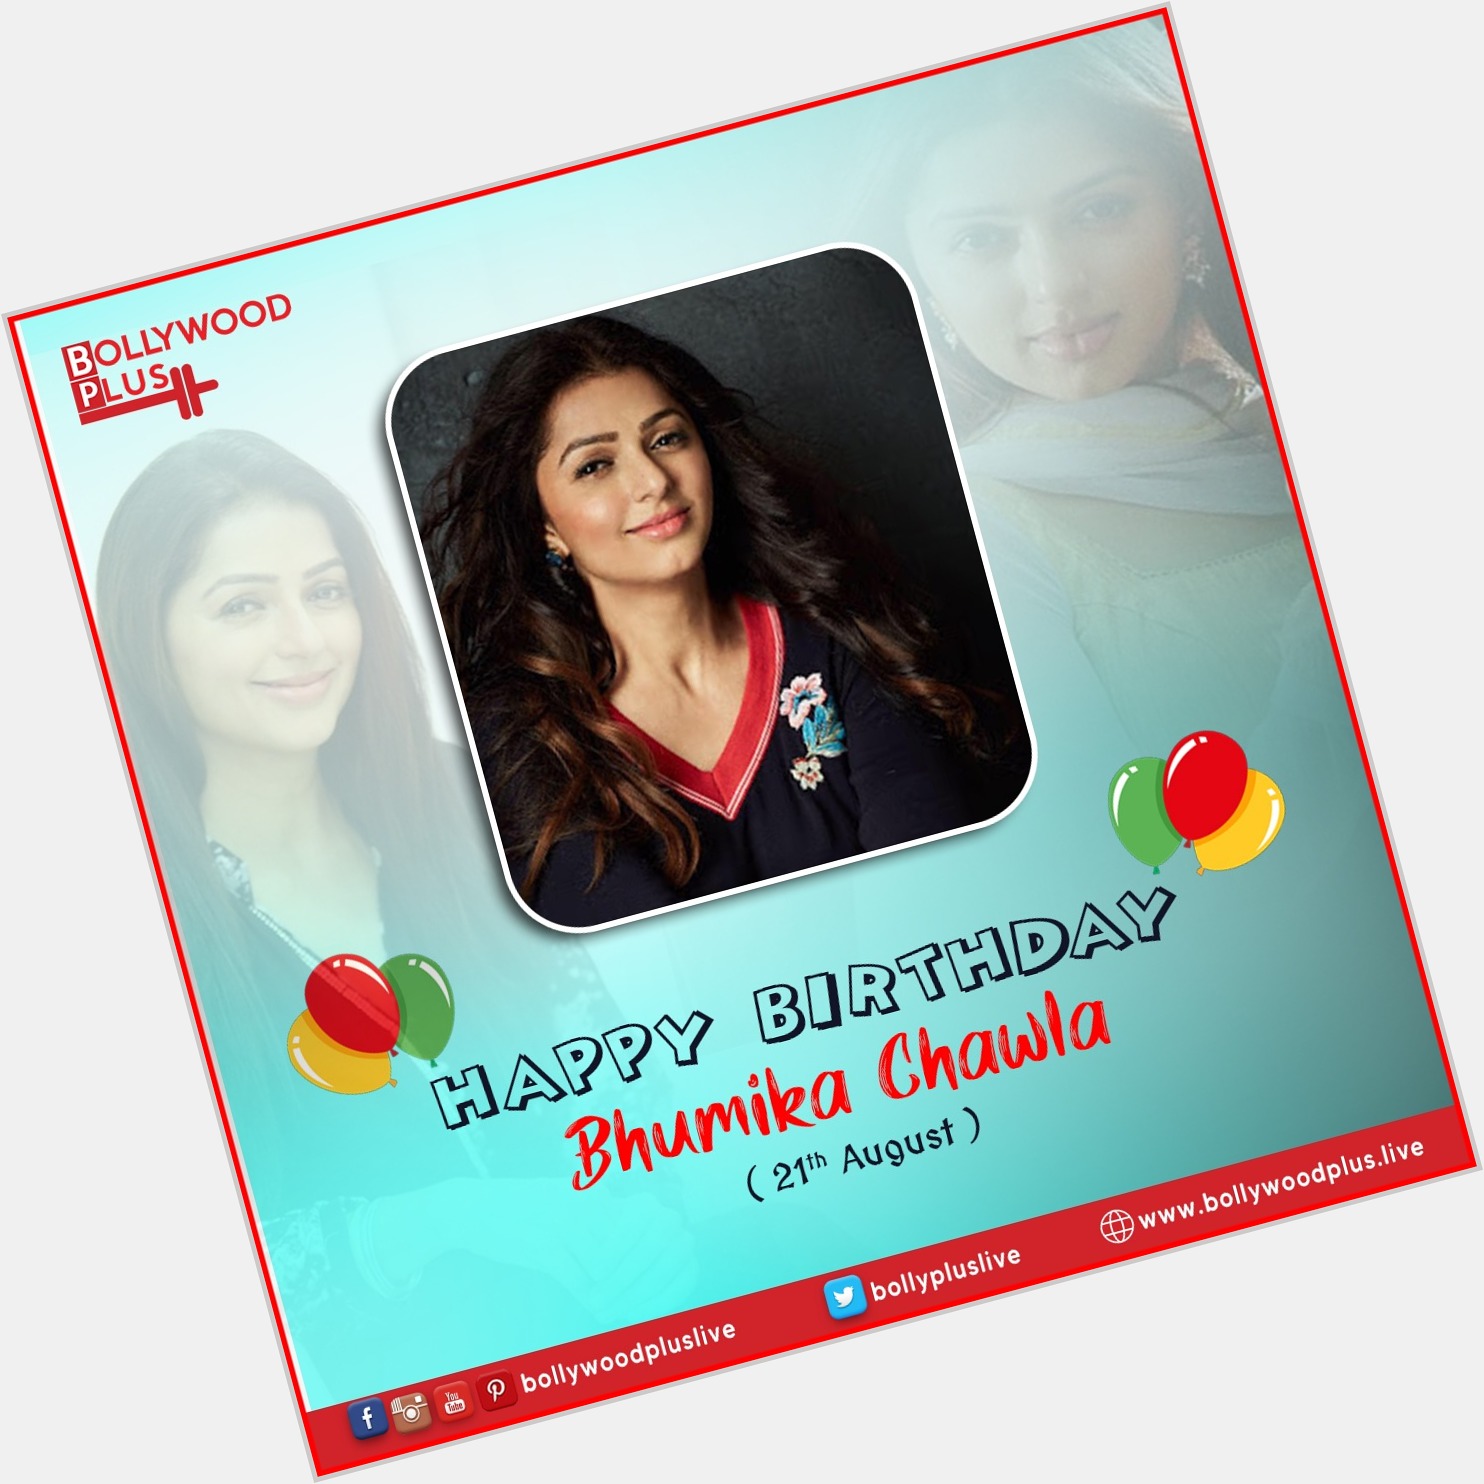 Happy Birthday Bhumika Chawla    